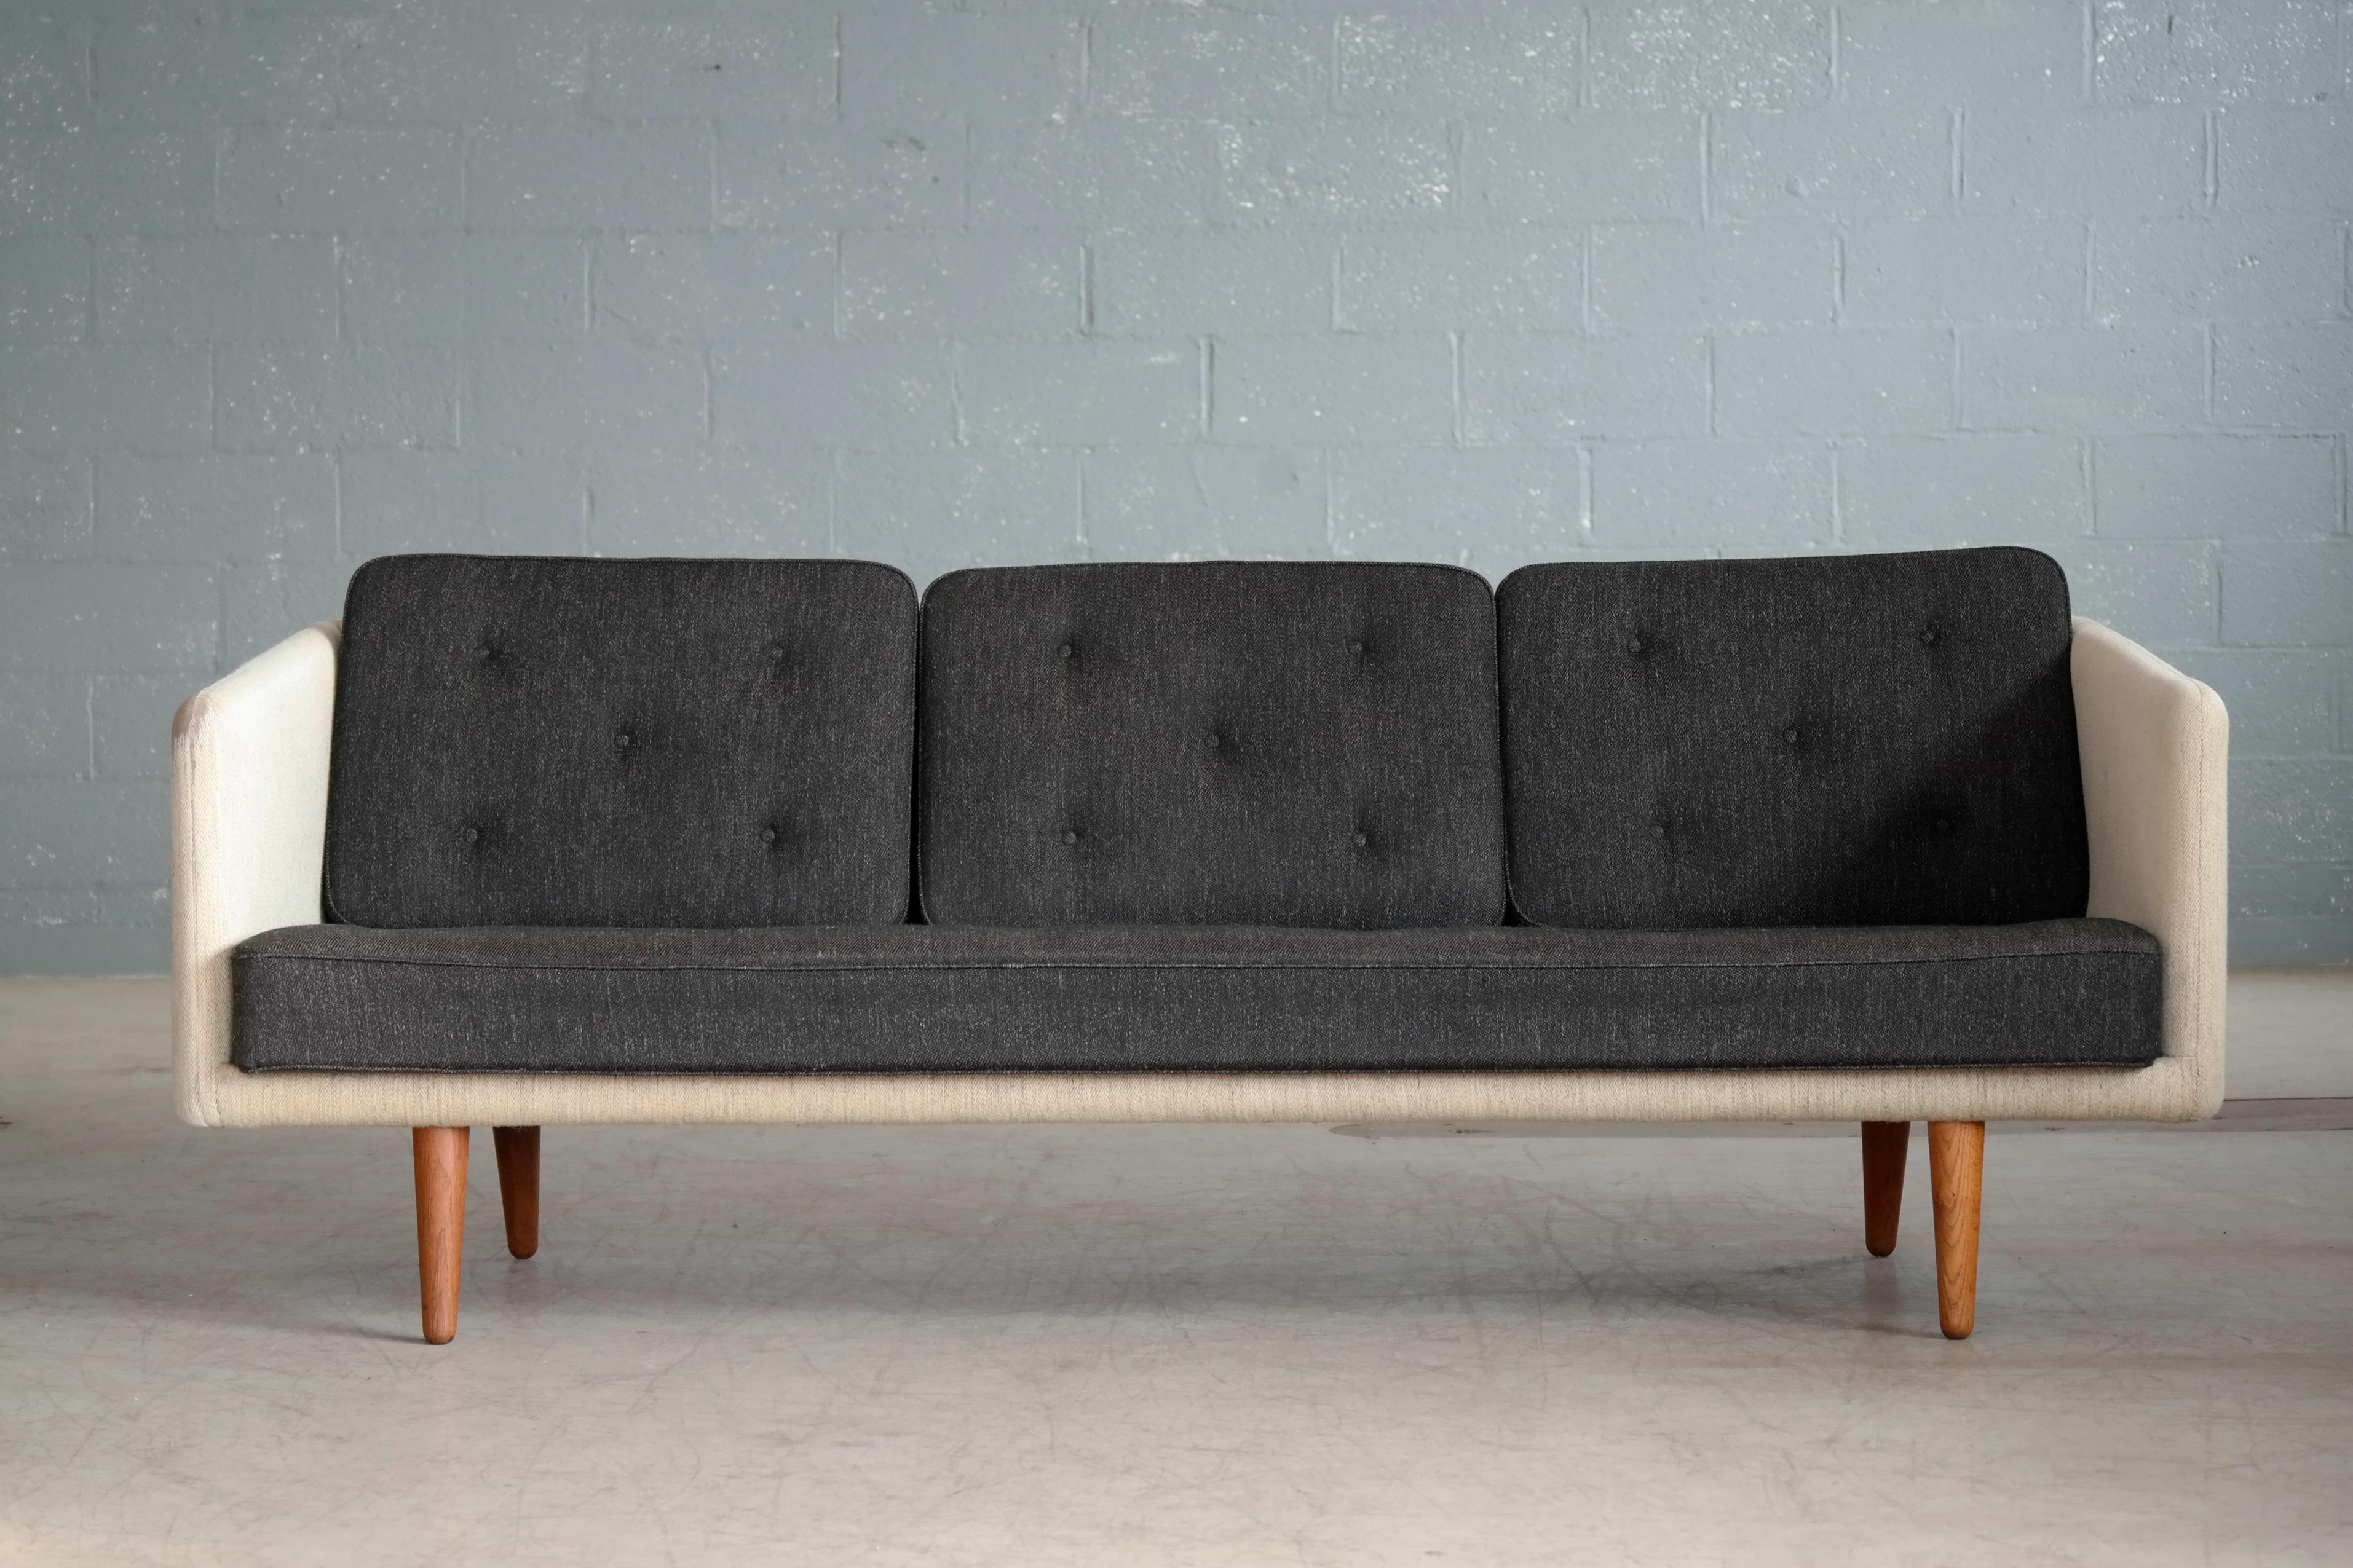 Dieses fantastische Sofa wurde 1955 von Borge Mogensen als Modell 203 für die Fredericia Stolefabrik entworfen und zwischen 1955 und 1960 hergestellt. Ganz im Sinne der Zeit verwendet Mogensen für dieses Sofa lose Kissen, was ein Präzedenzfall für